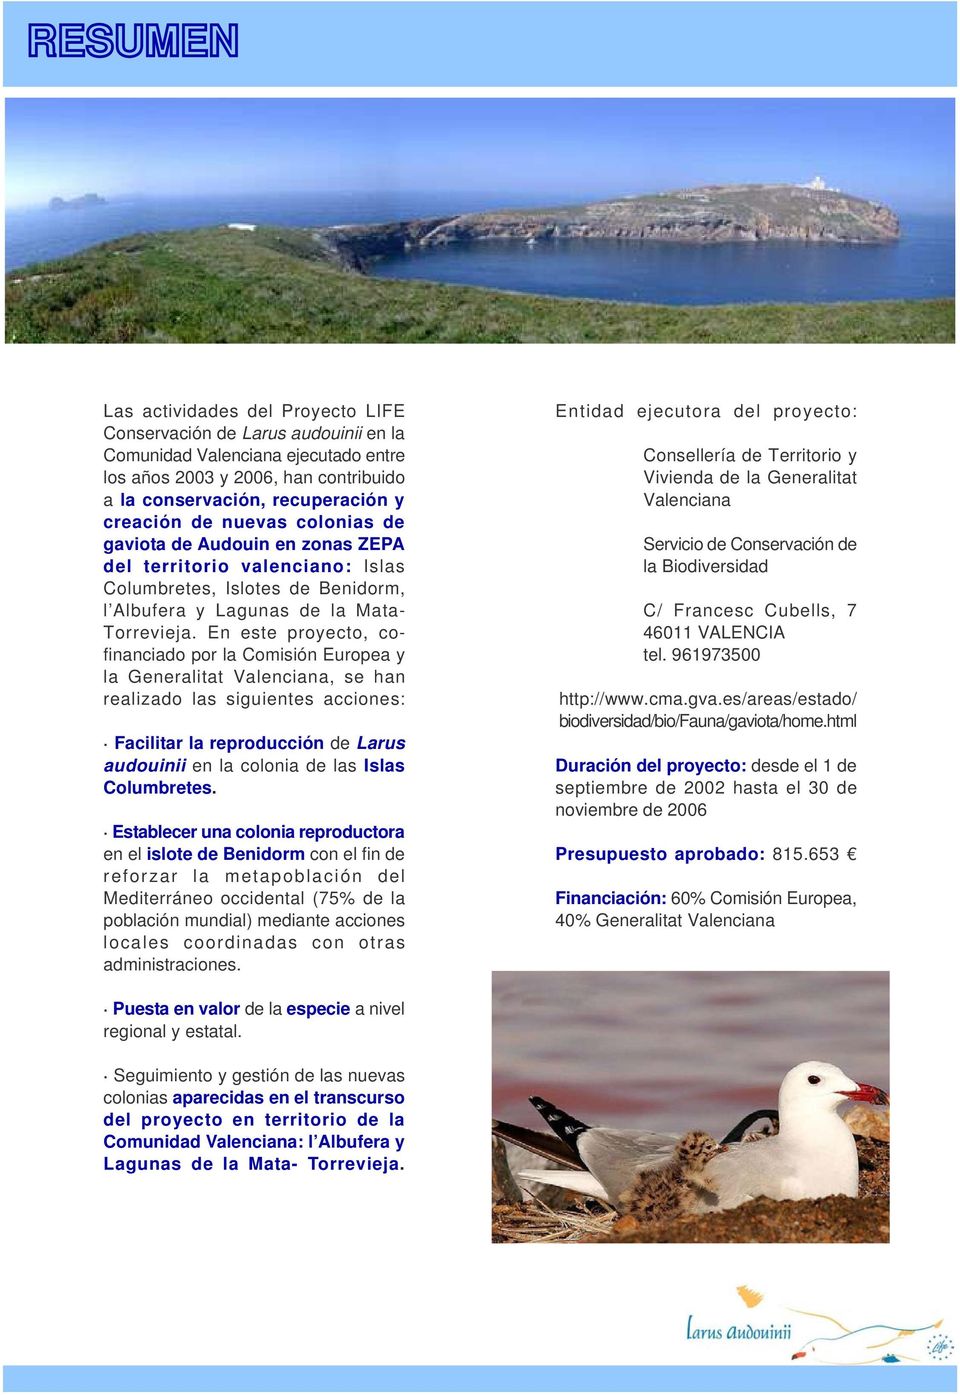 En este proyecto, cofinanciado por la Comisión Europea y la Generalitat Valenciana, se han realizado las siguientes acciones: Facilitar la reproducción de Larus audouinii en la colonia de las Islas